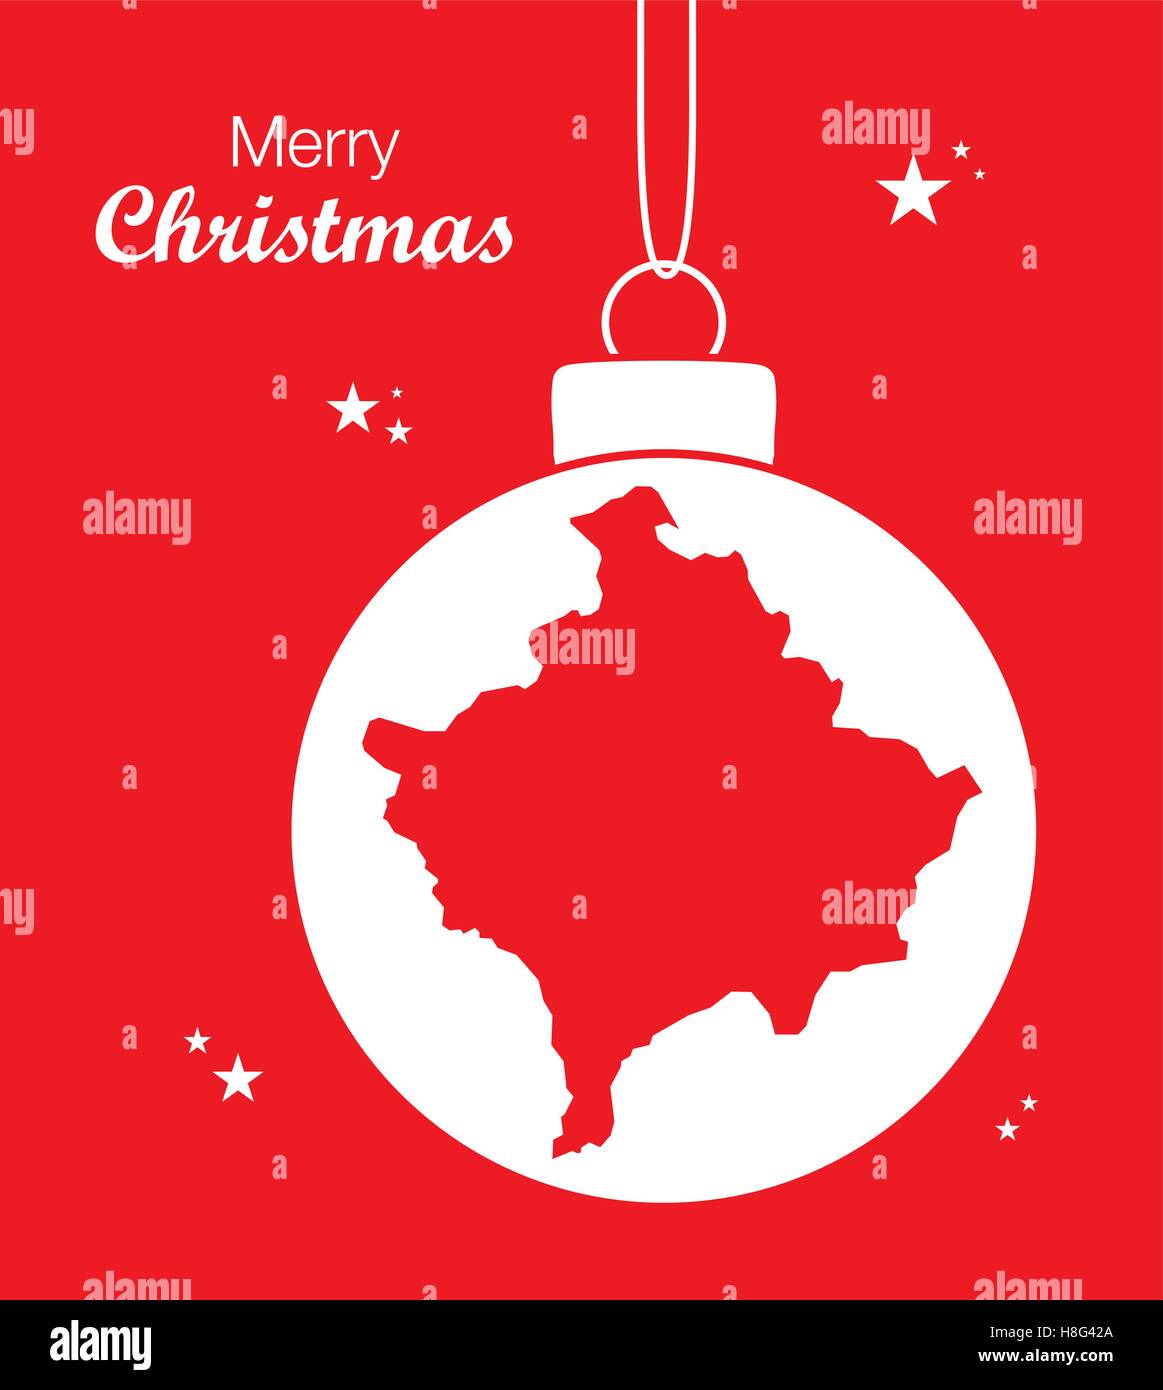 Merry Christmas Map Kosovo Stock Vector